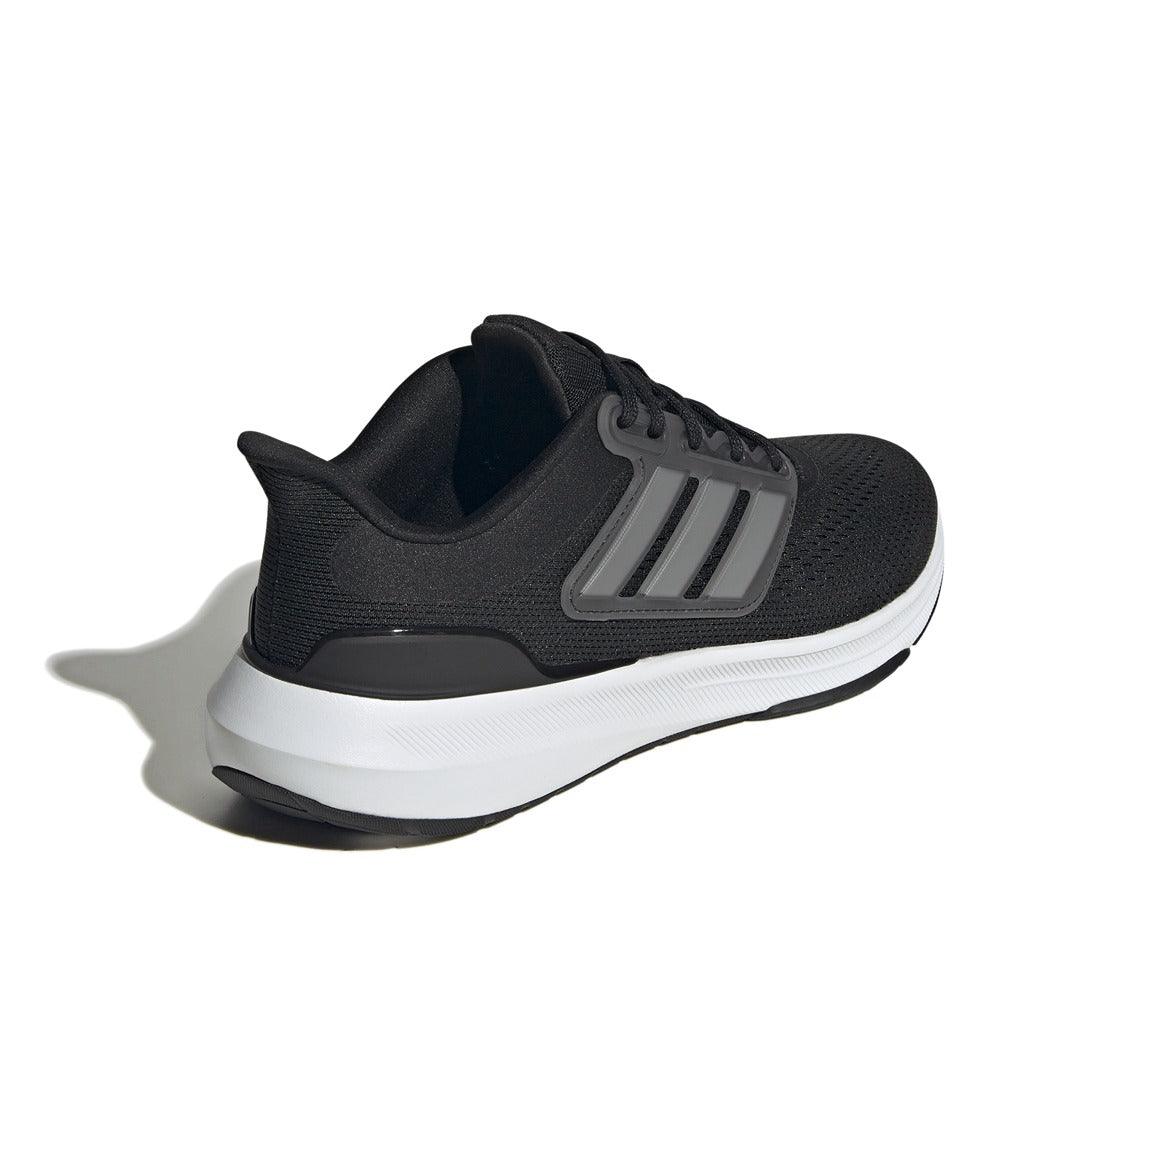 adidas Ultrabounce Running Shoes - Men